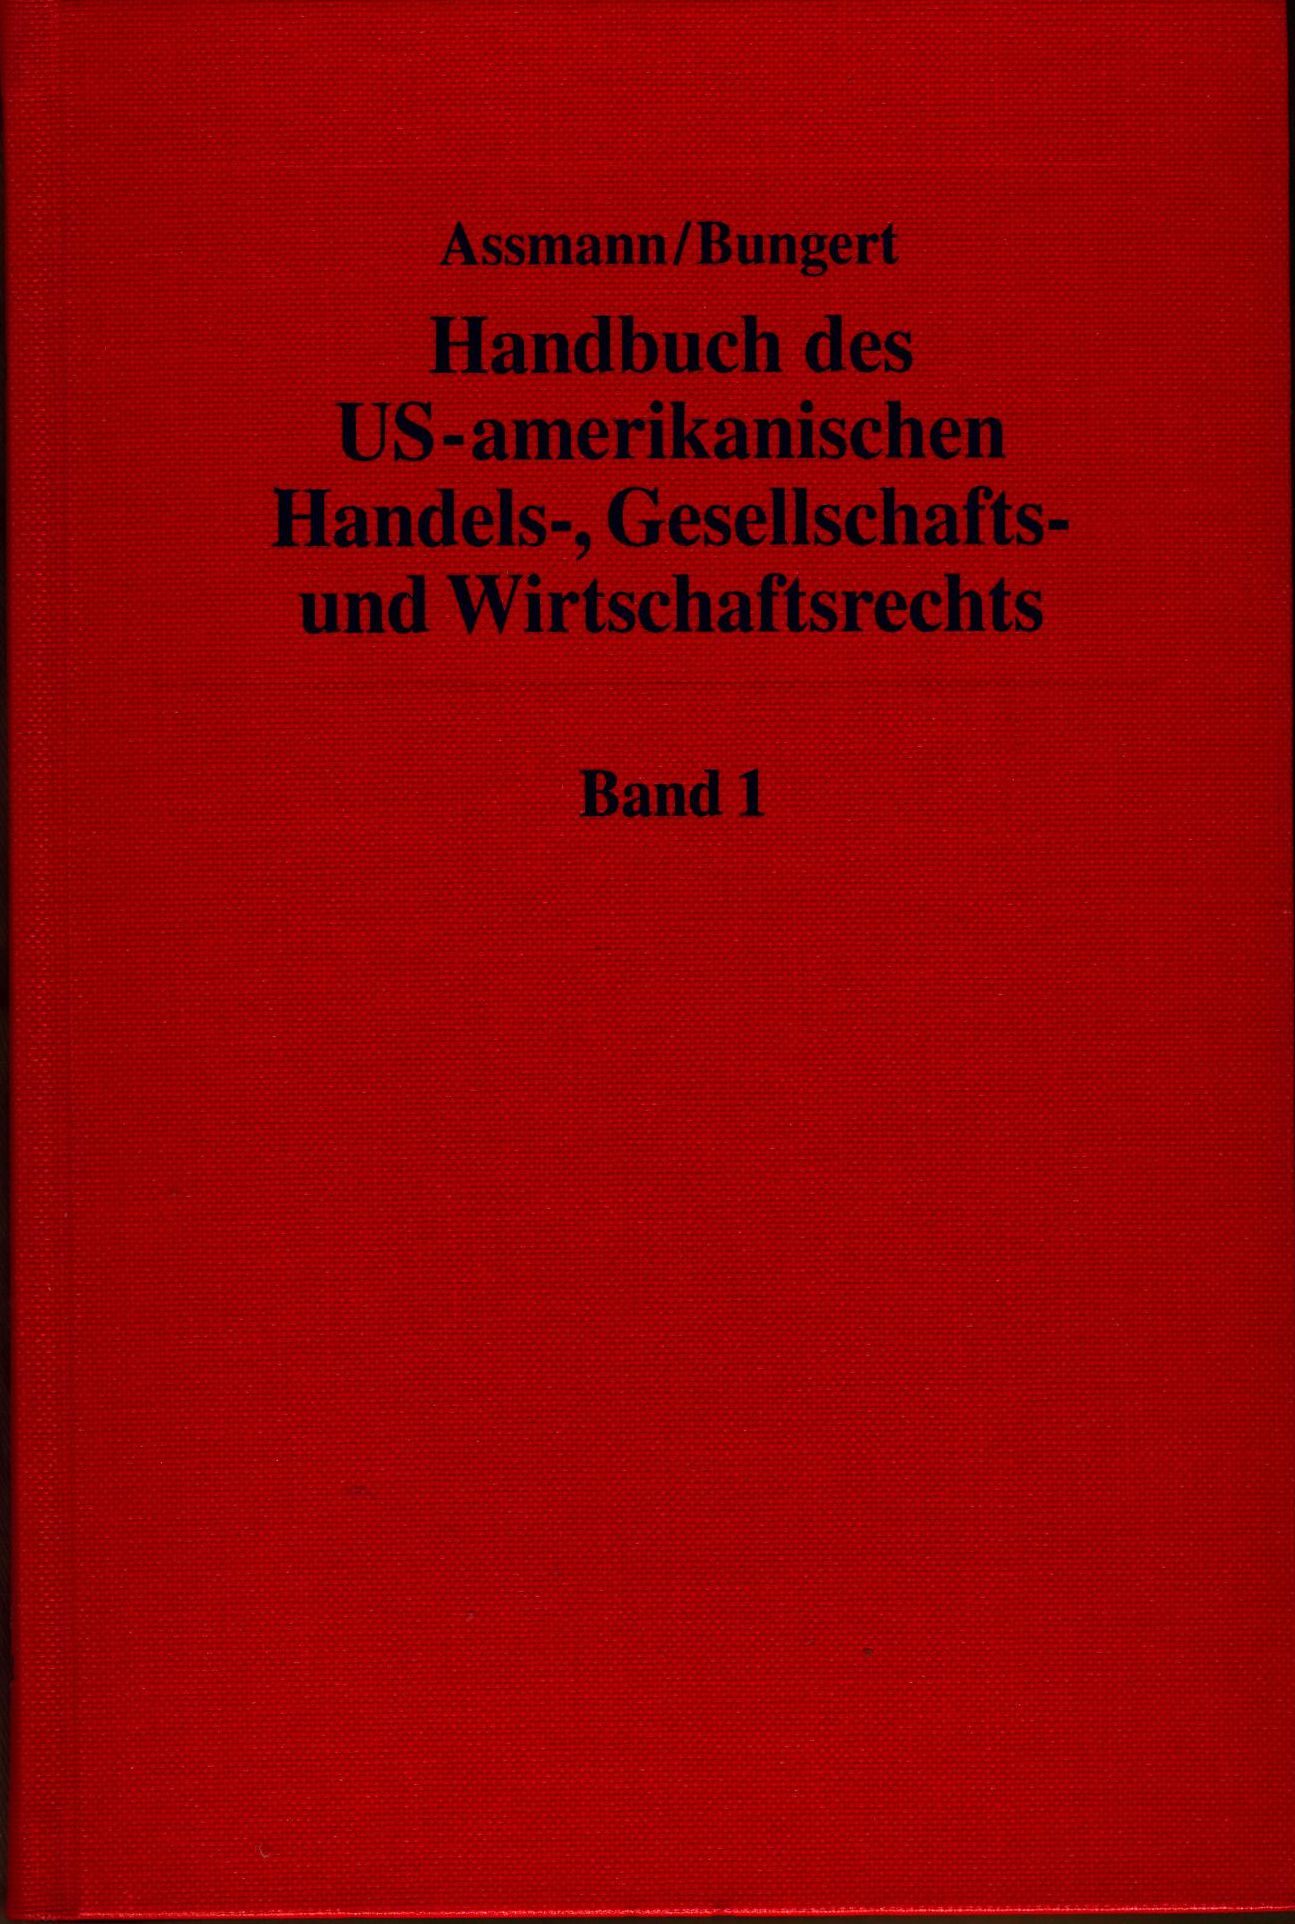 Handbuch des US-amerikanischen Handels-, Gesellschafts- und Wirtschaftsrechts  Teil: Band 1 - Assmann, Heinz-Dieter und Hartwin Bungert